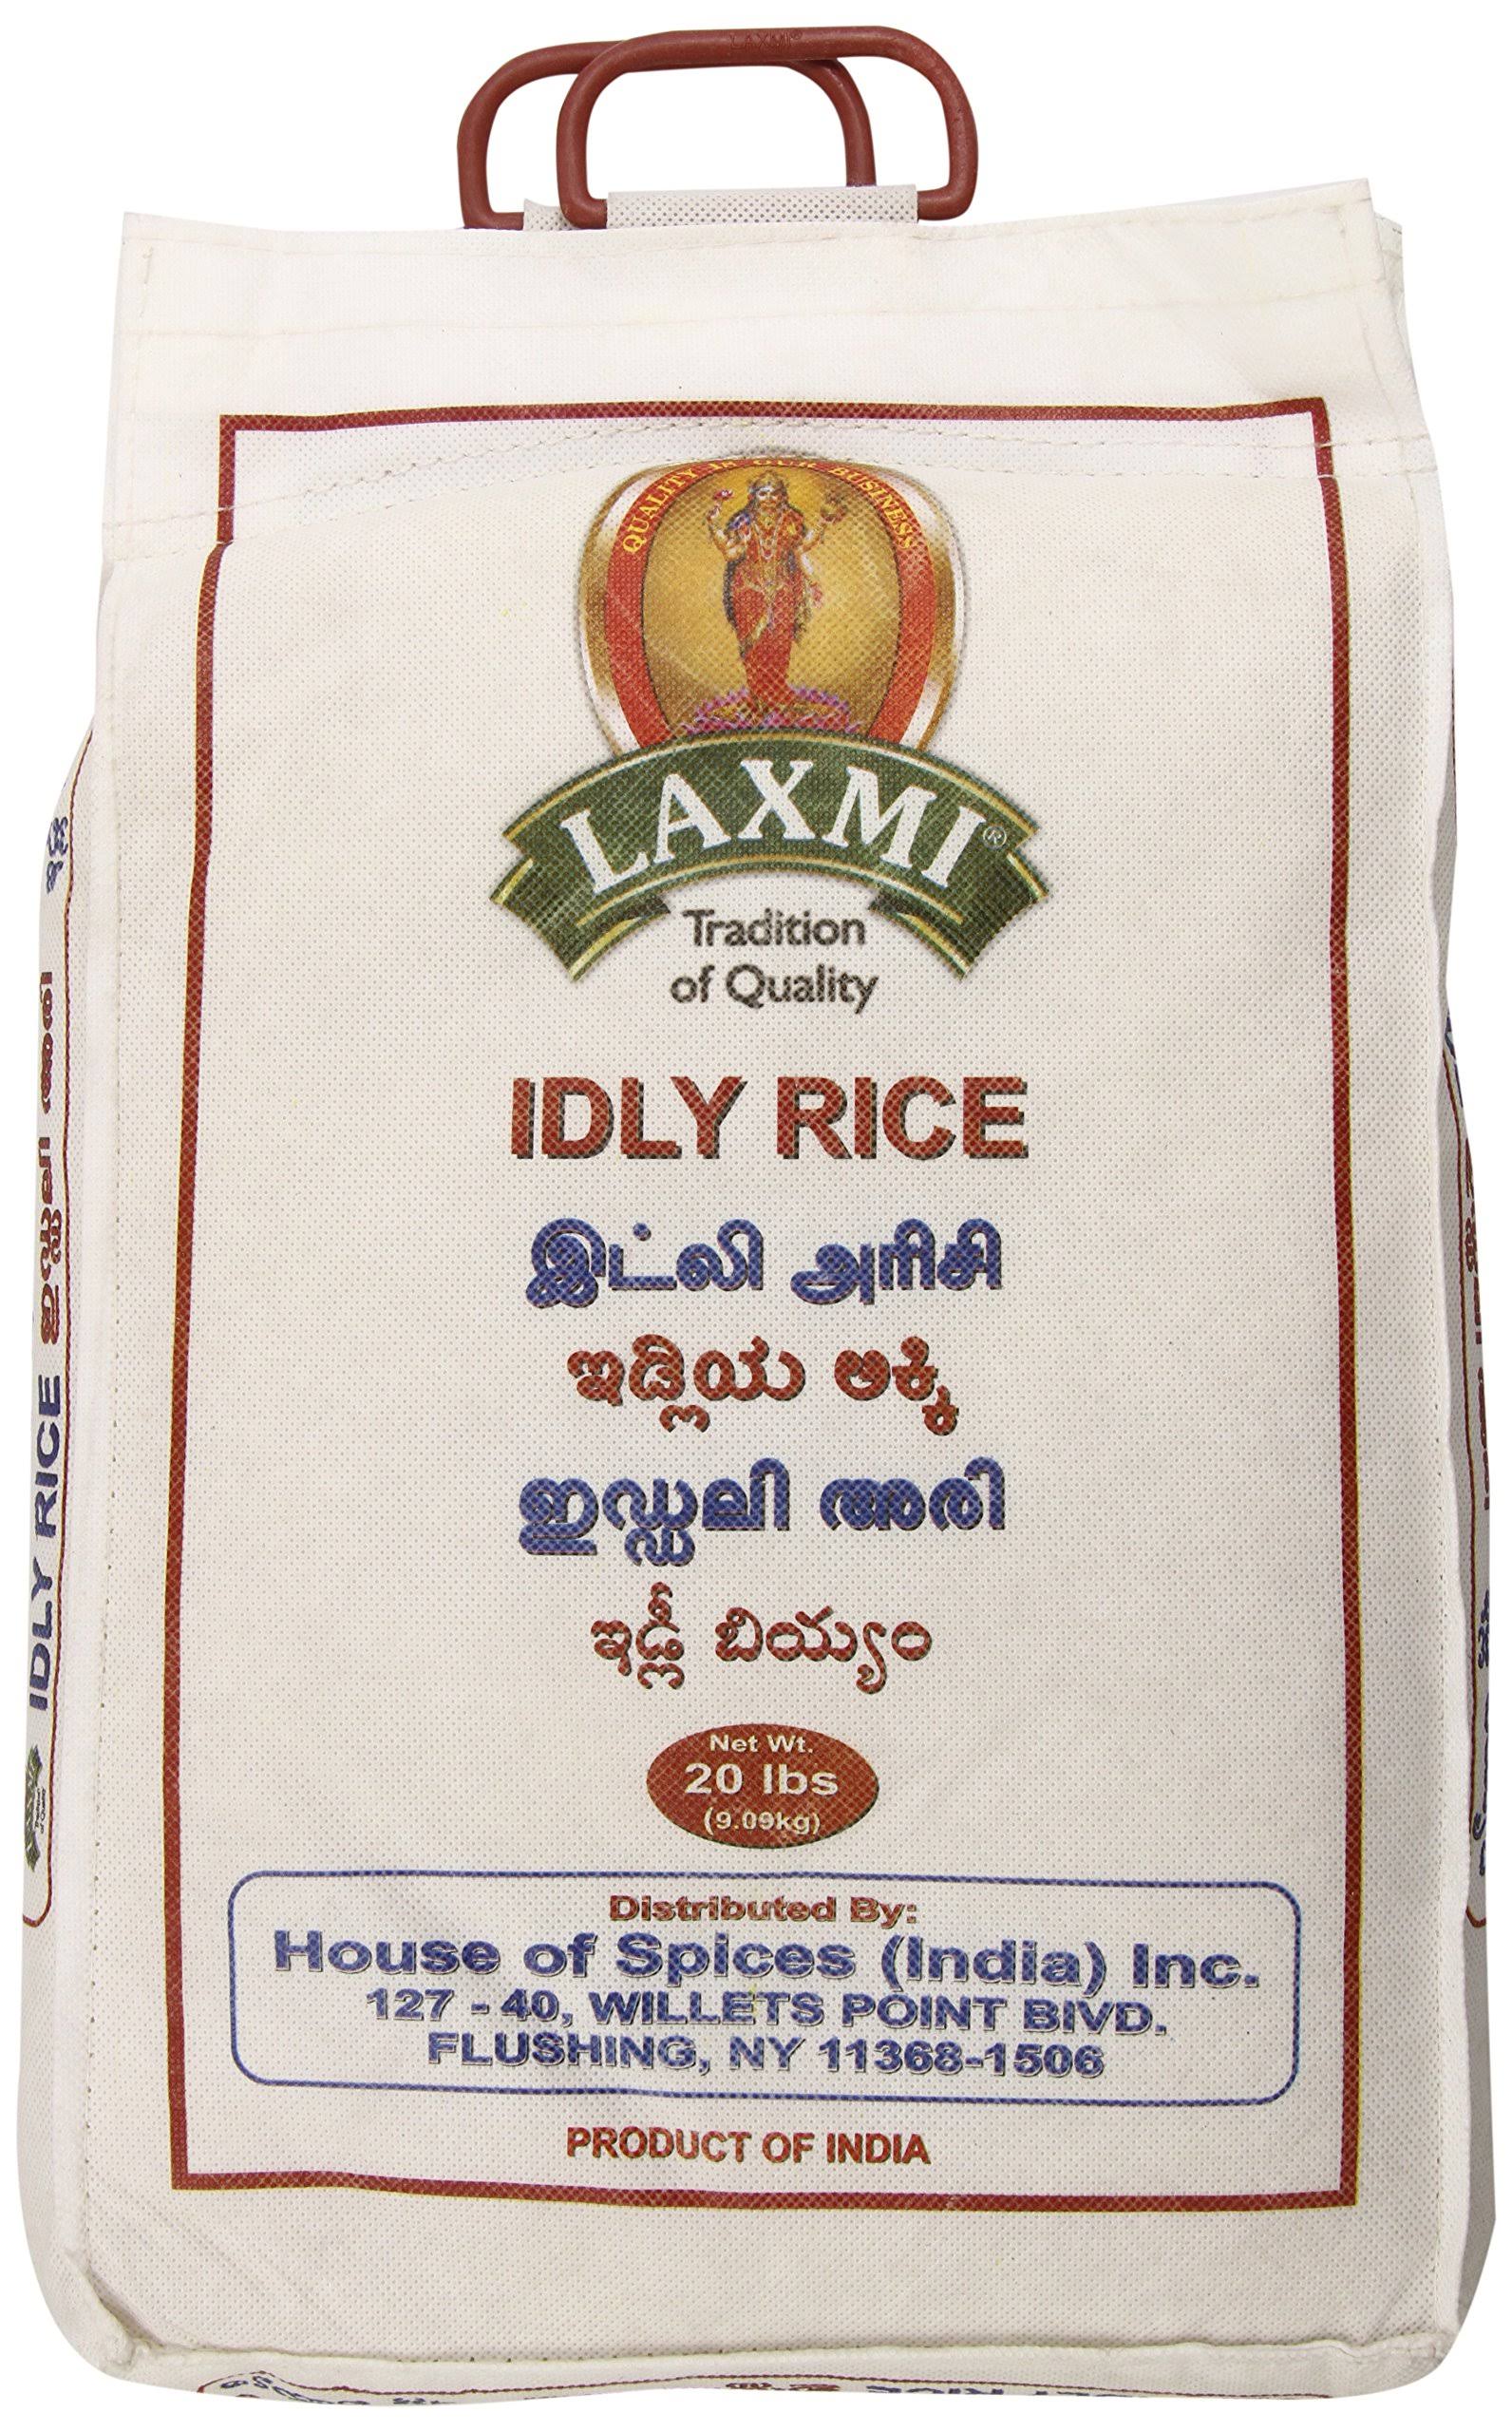 Laxmi Idli Rice - 320 oz